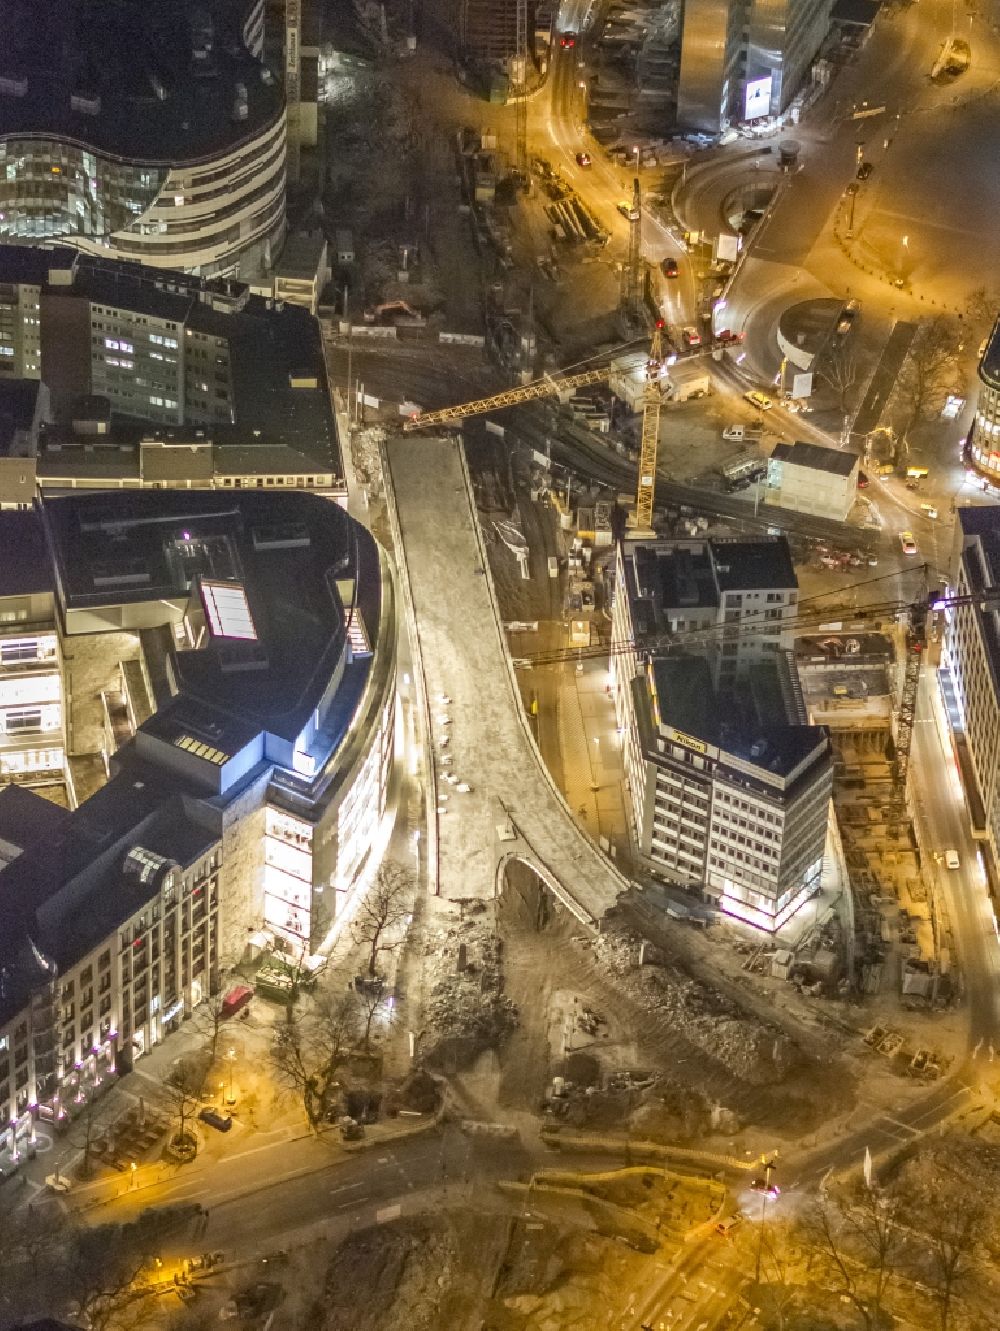 Nachtluftbild Düsseldorf - Nacht- Luftbild der Baustelle zum Abriß der alten Verkehrstangente Tausendfüßler in Innenstadt von Düsseldorf in Nordrhein-Westfalen